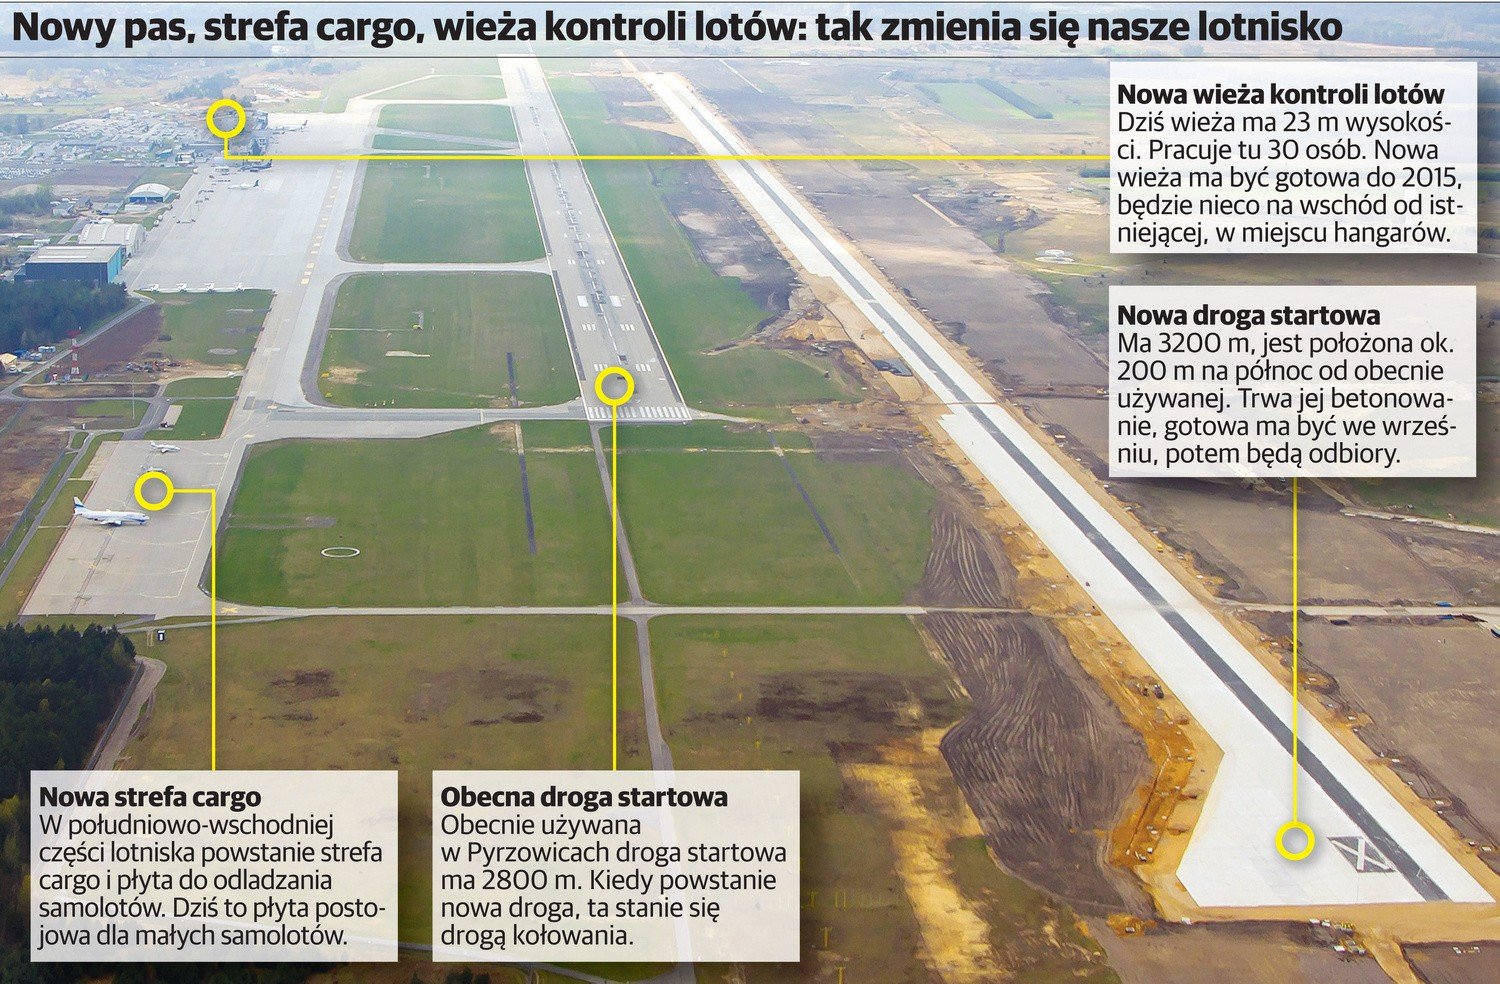 Katowice Airport: Nowa droga startowa w Pyrzowicach [INFOGRAFIKA] |  Dziennik Zachodni